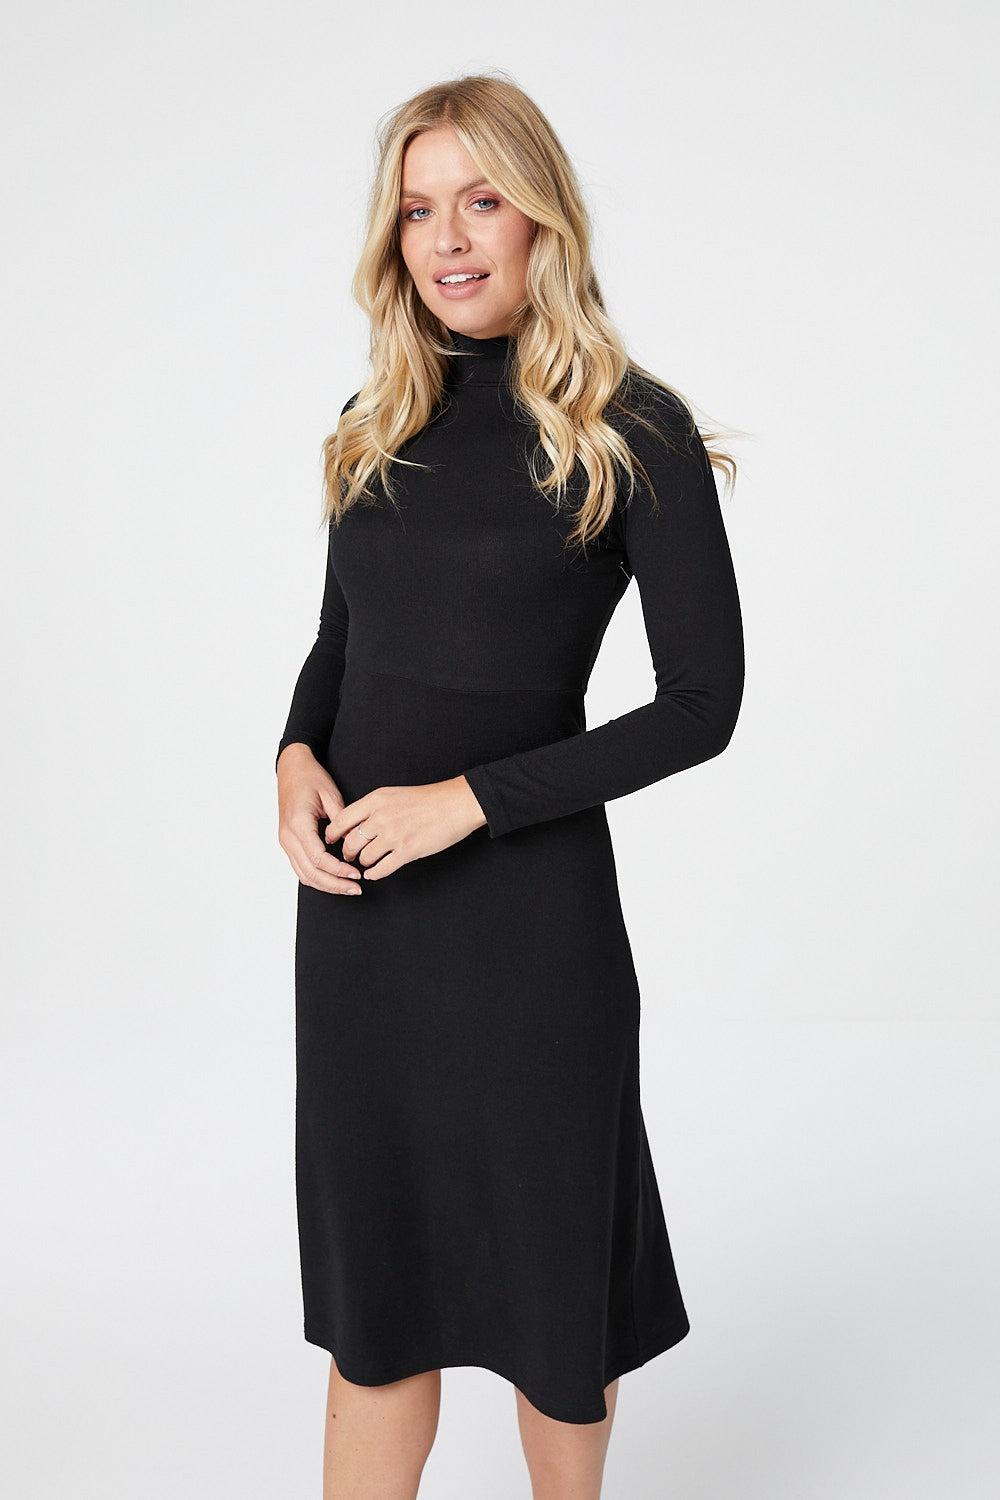 Izabel London Long Sleeve Turtleneck Dress in Black | Lyst UK